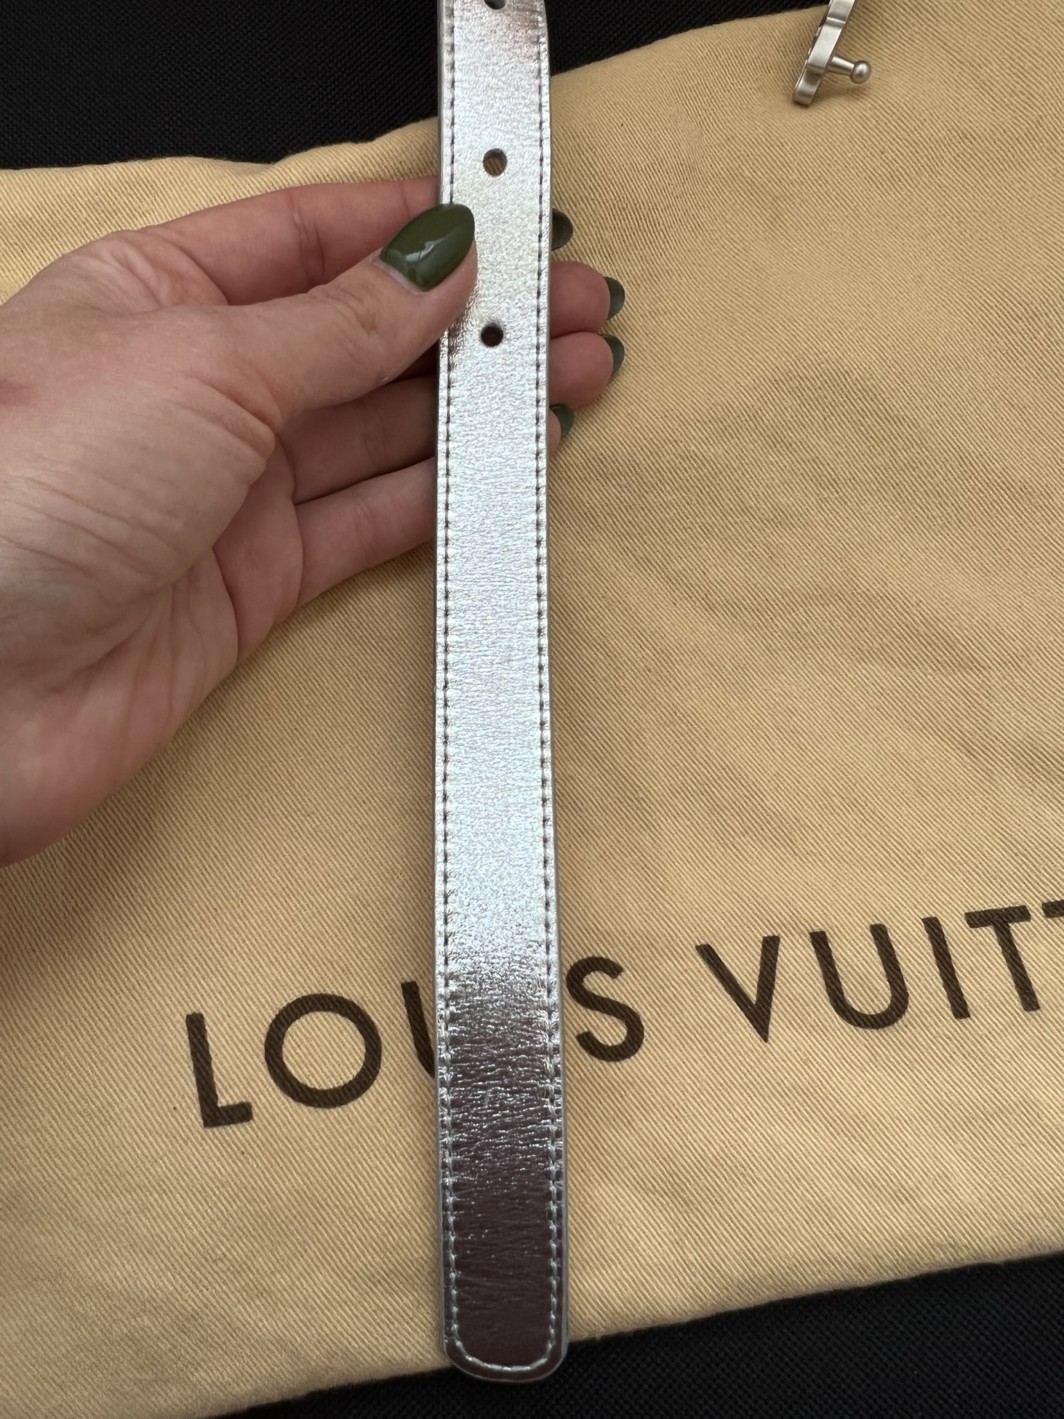 Louis Vuitton ремень серебро лимитированный 90/36